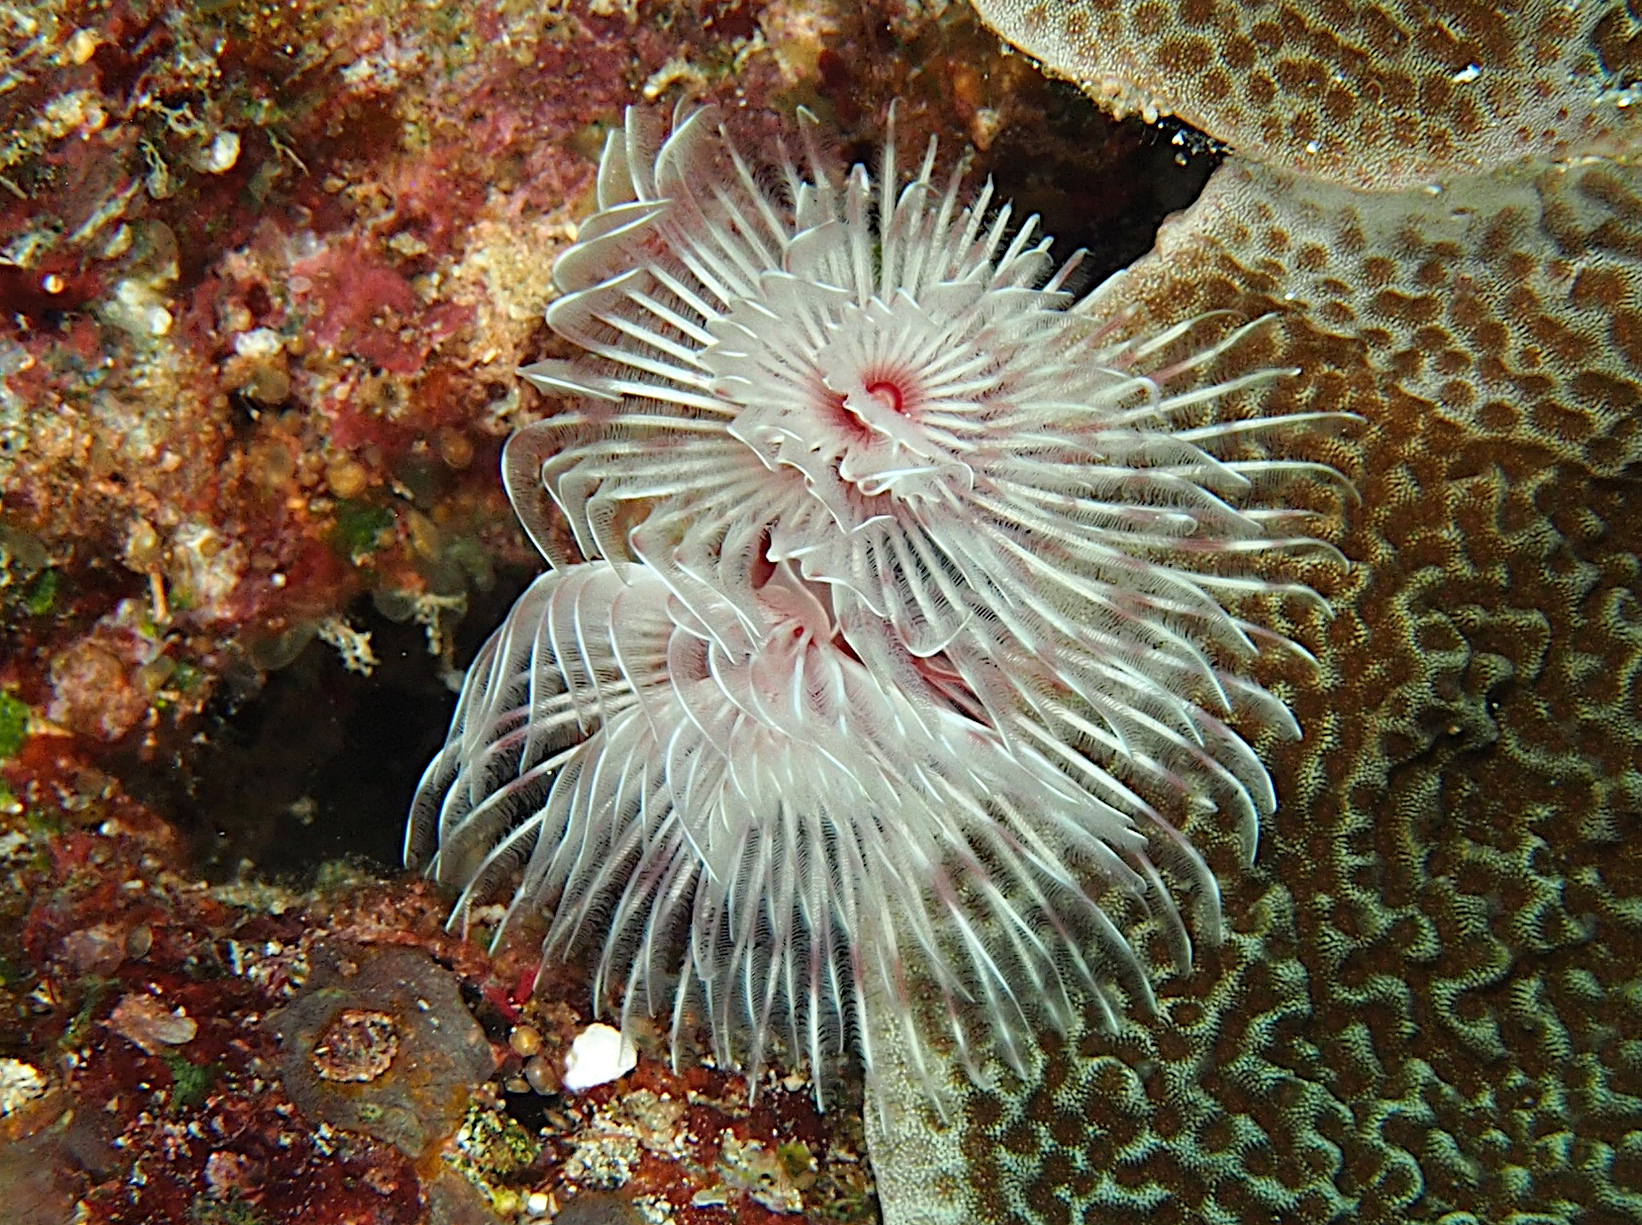 Magnificent Tube Worm - Protula bispiralis - Wakatobi, Indonesia